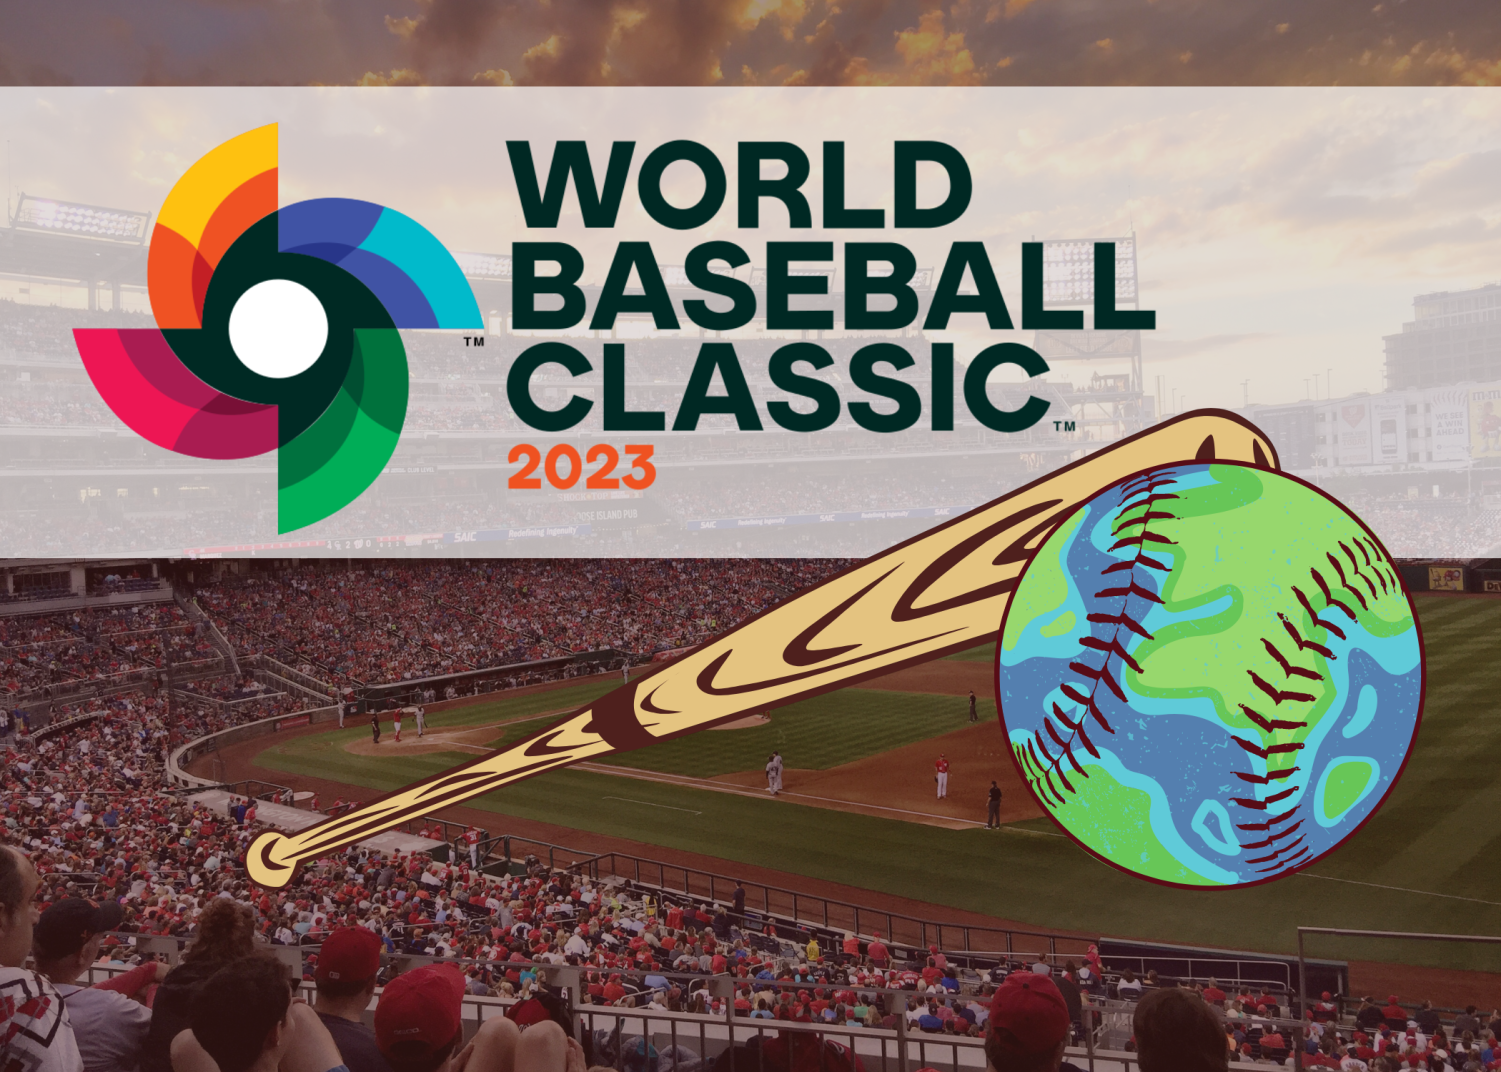 World Baseball Classic 2023: Mexico vs. Japan in semifinals - True Blue LA